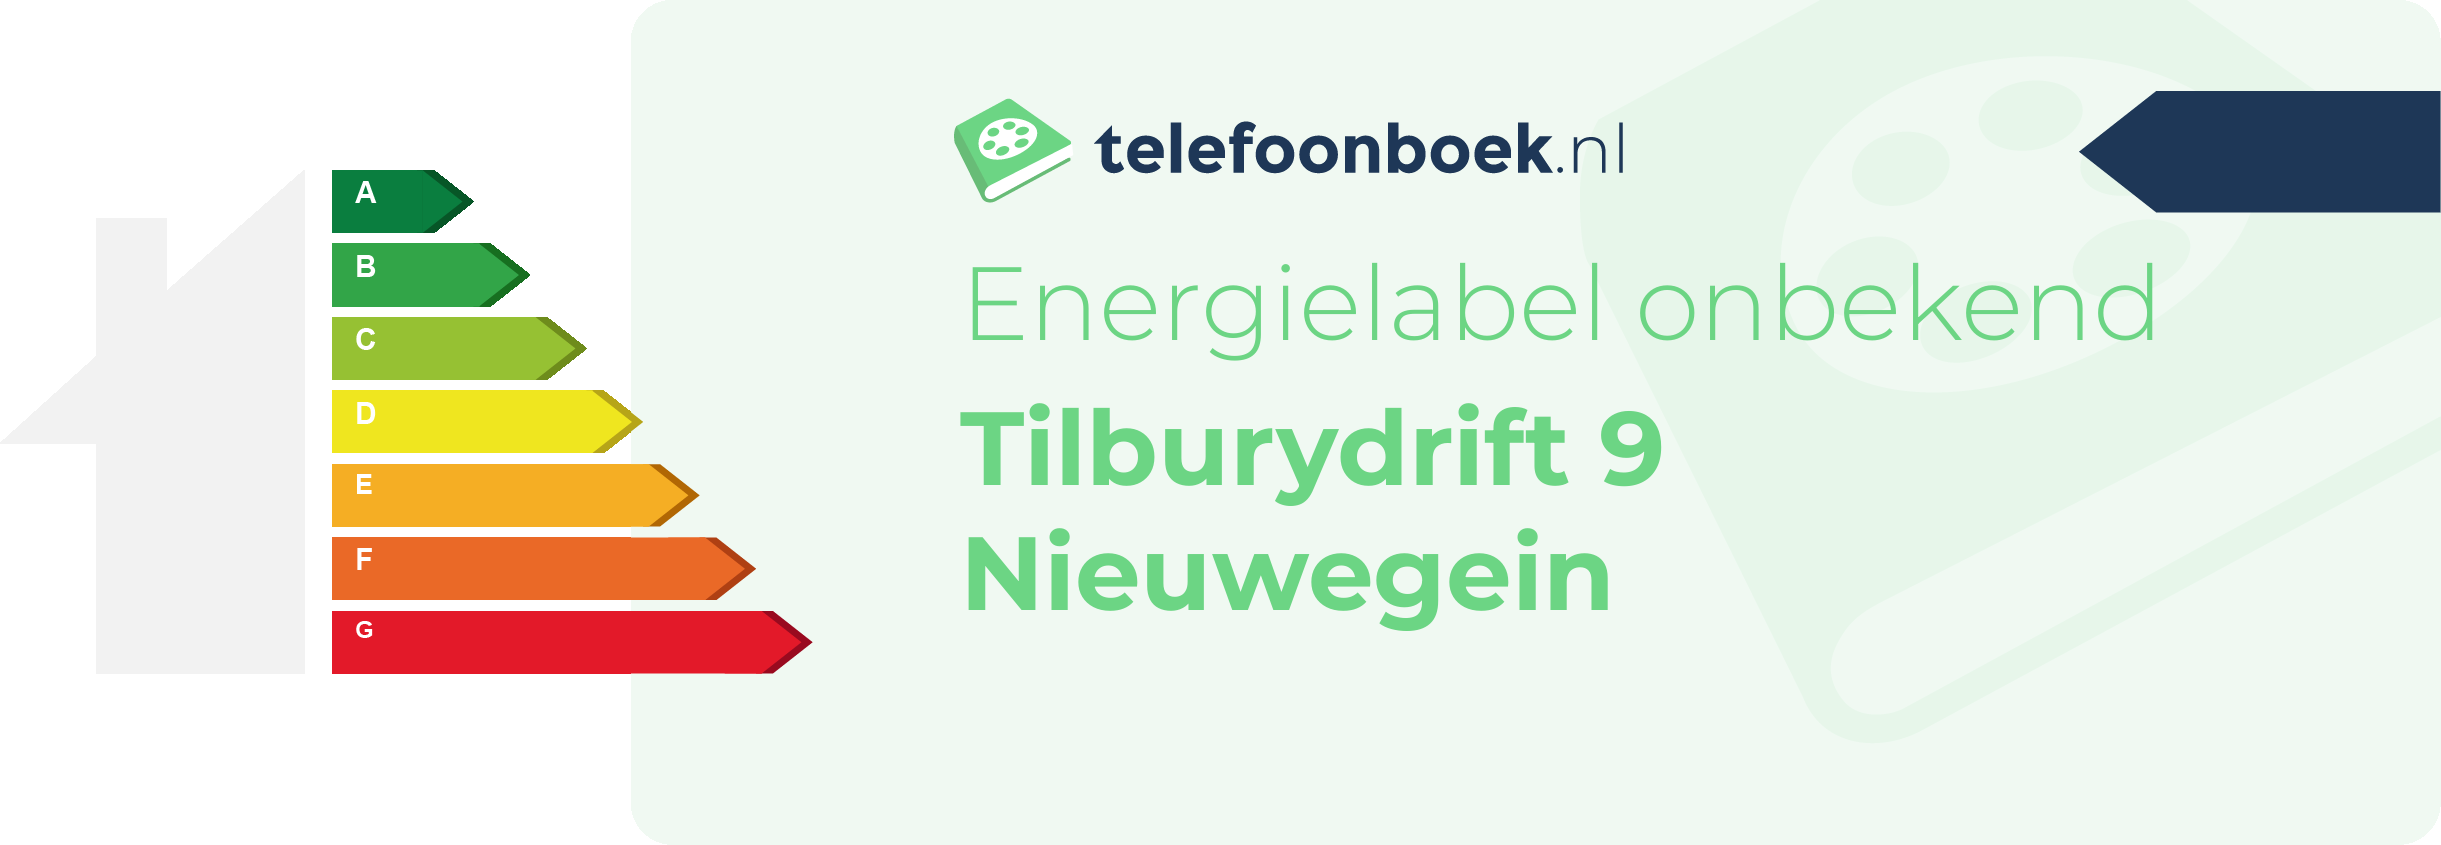 Energielabel Tilburydrift 9 Nieuwegein